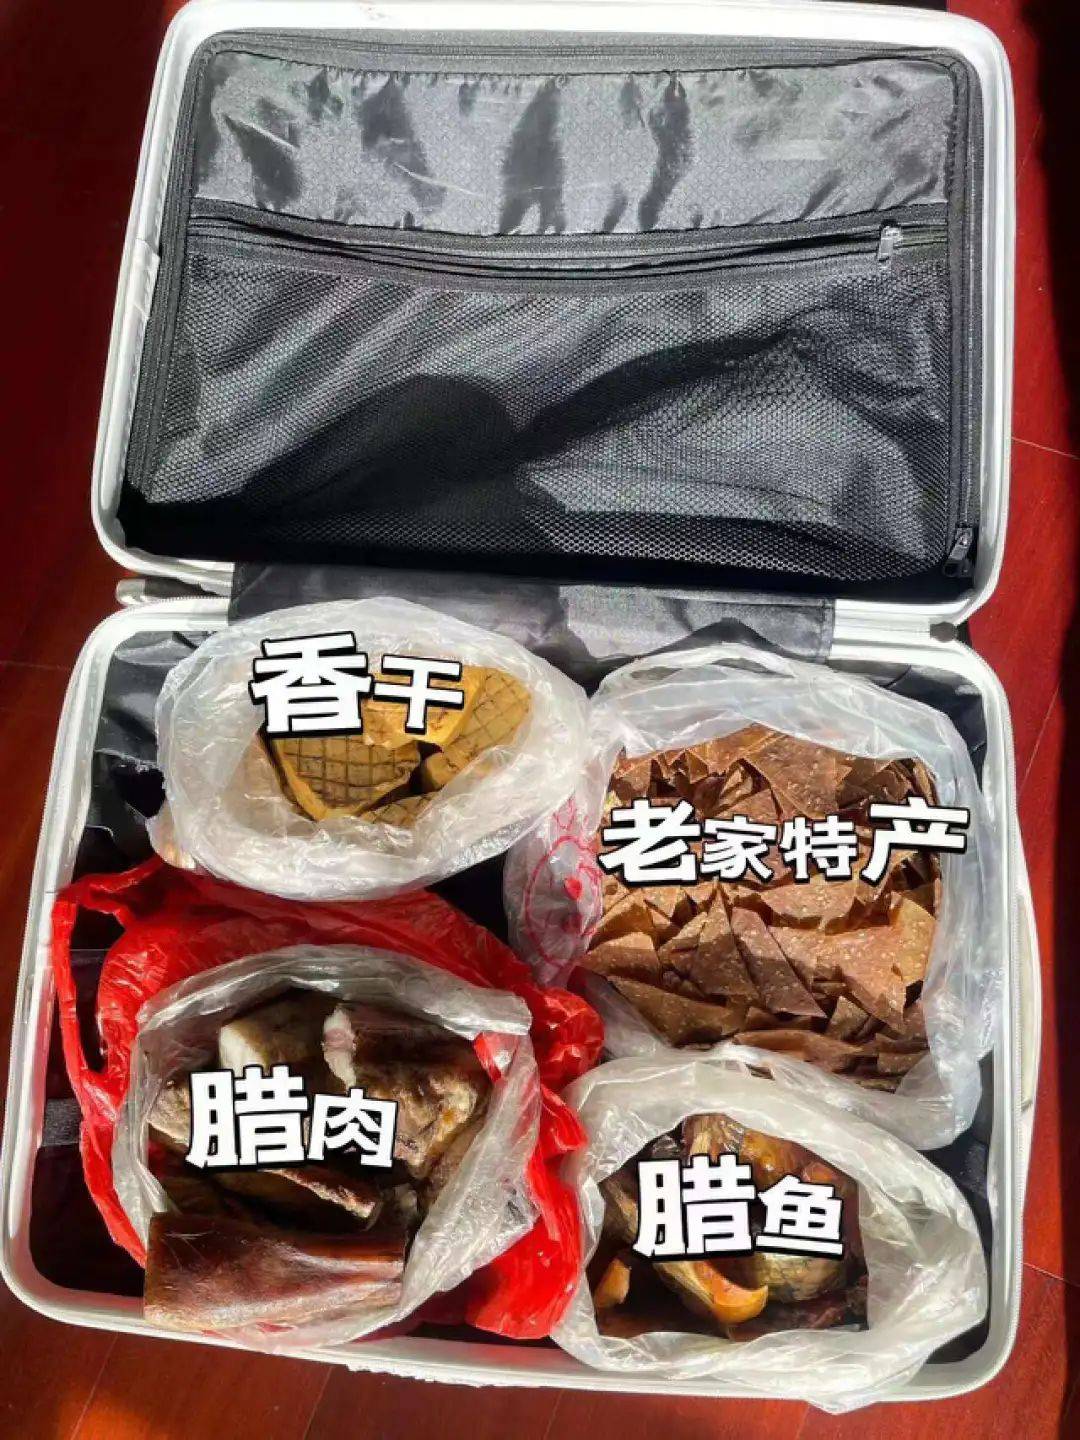 返工年轻人的行李箱，装满了“土味”